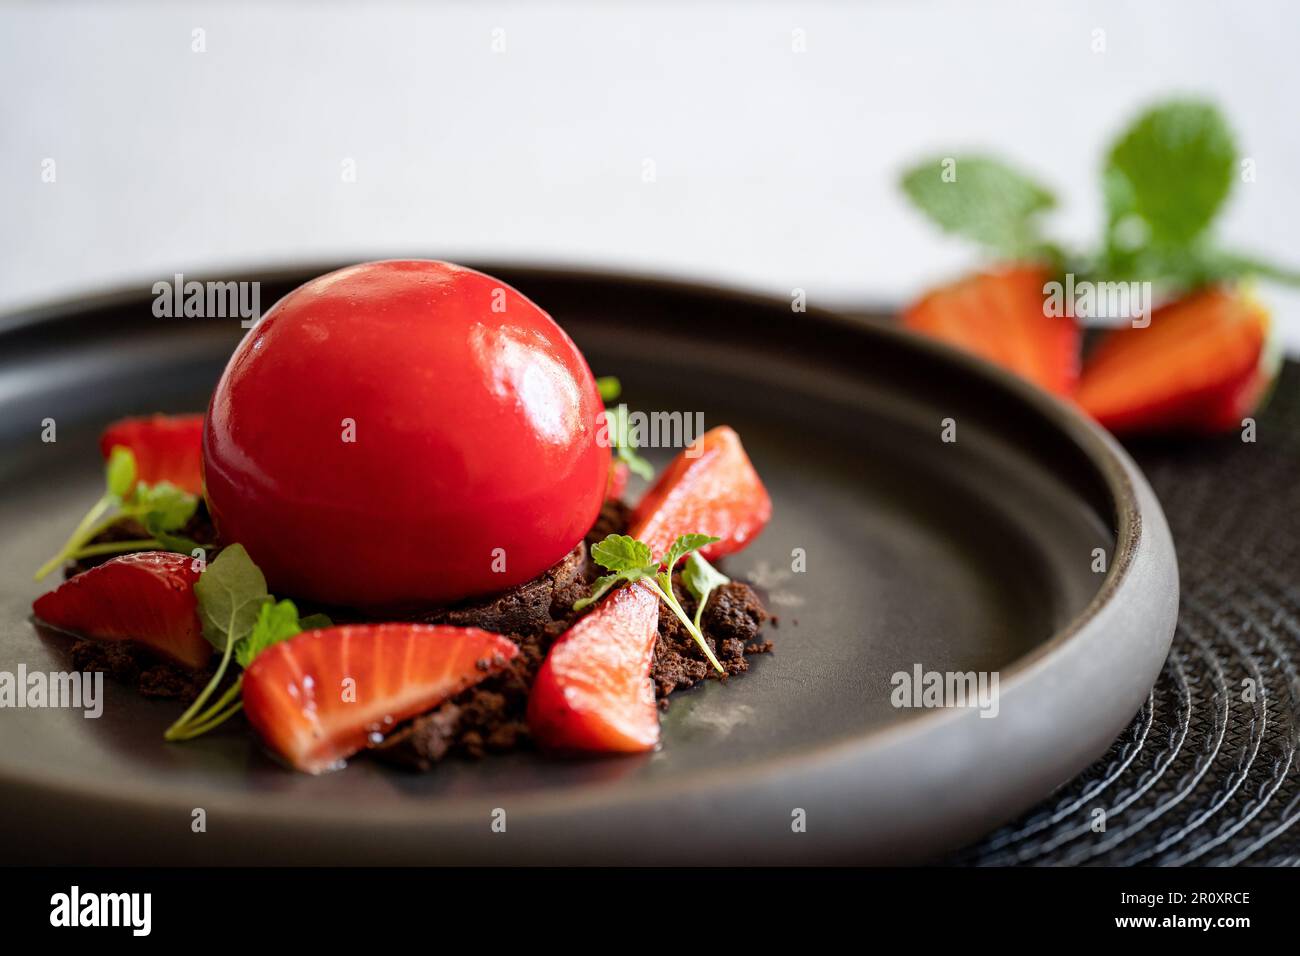 Selektivfokus eines kugelförmigen Bruchkuchens mit Erdbeeren und Brownie. Dessert mit glatten Oberflächen und Spiegelglasur. Rotes Dessert auf dem schwarzen Teller. Stockfoto